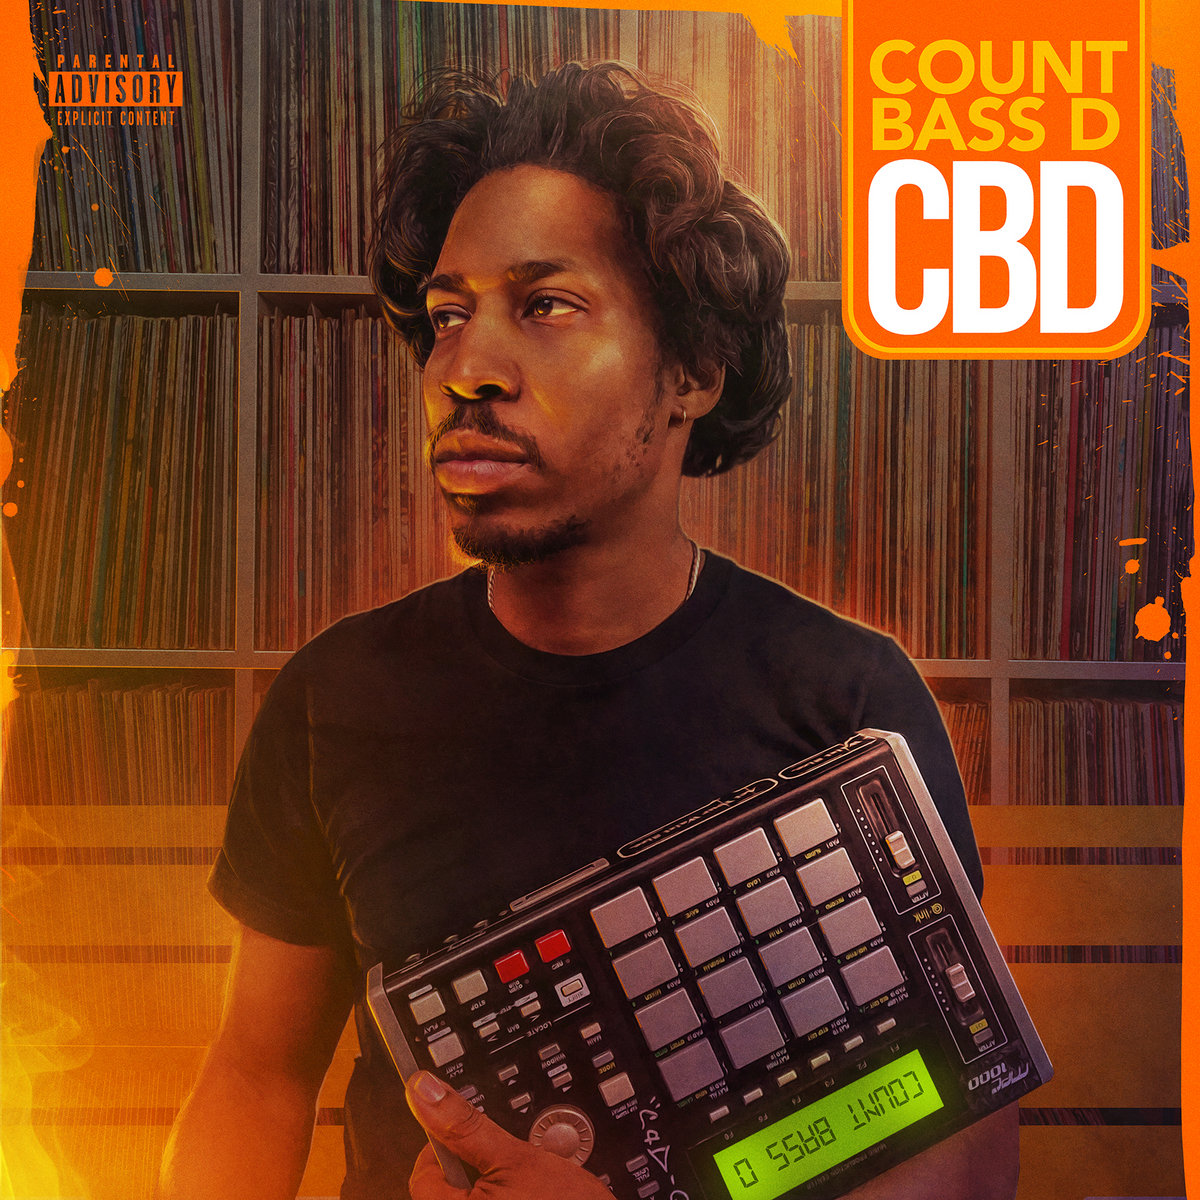 Count Bass D Delivers 'CBD' Album